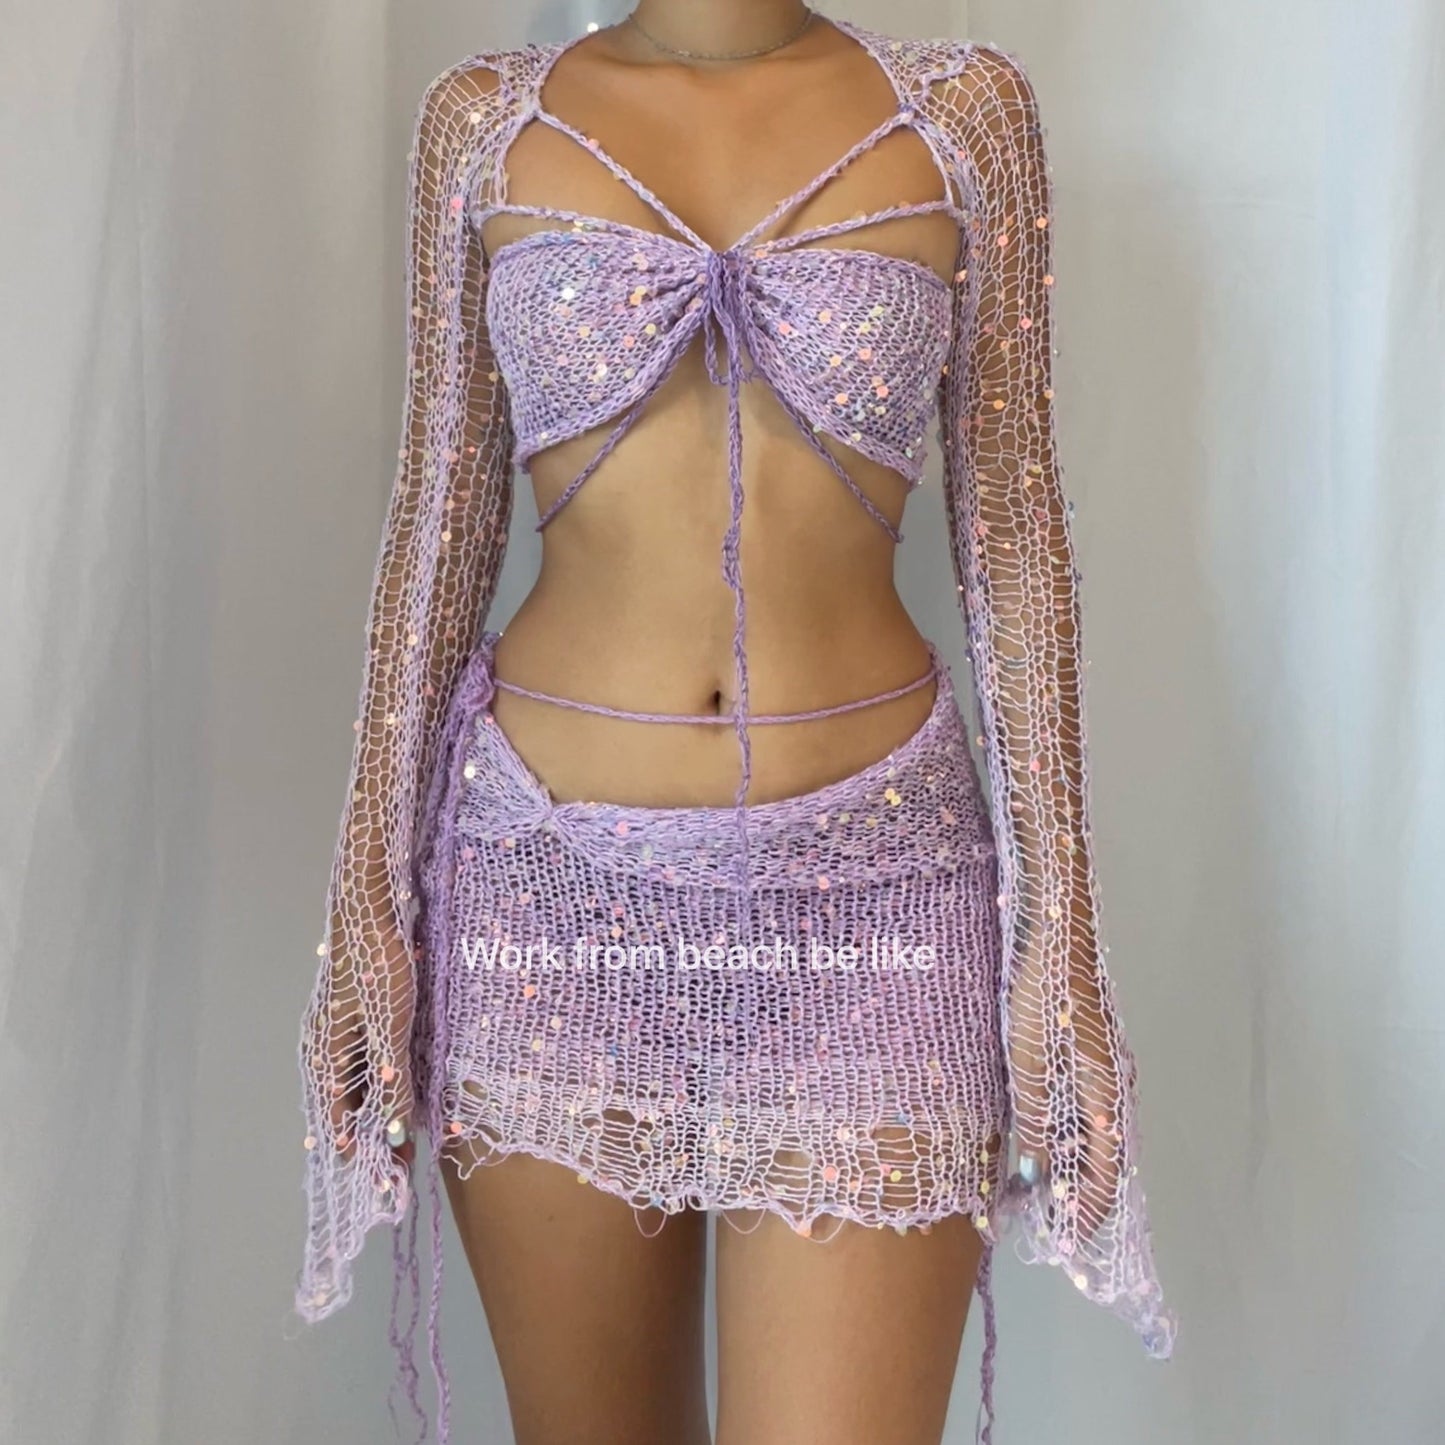 Butterfly set (Top & Skirt) - Pale Purple